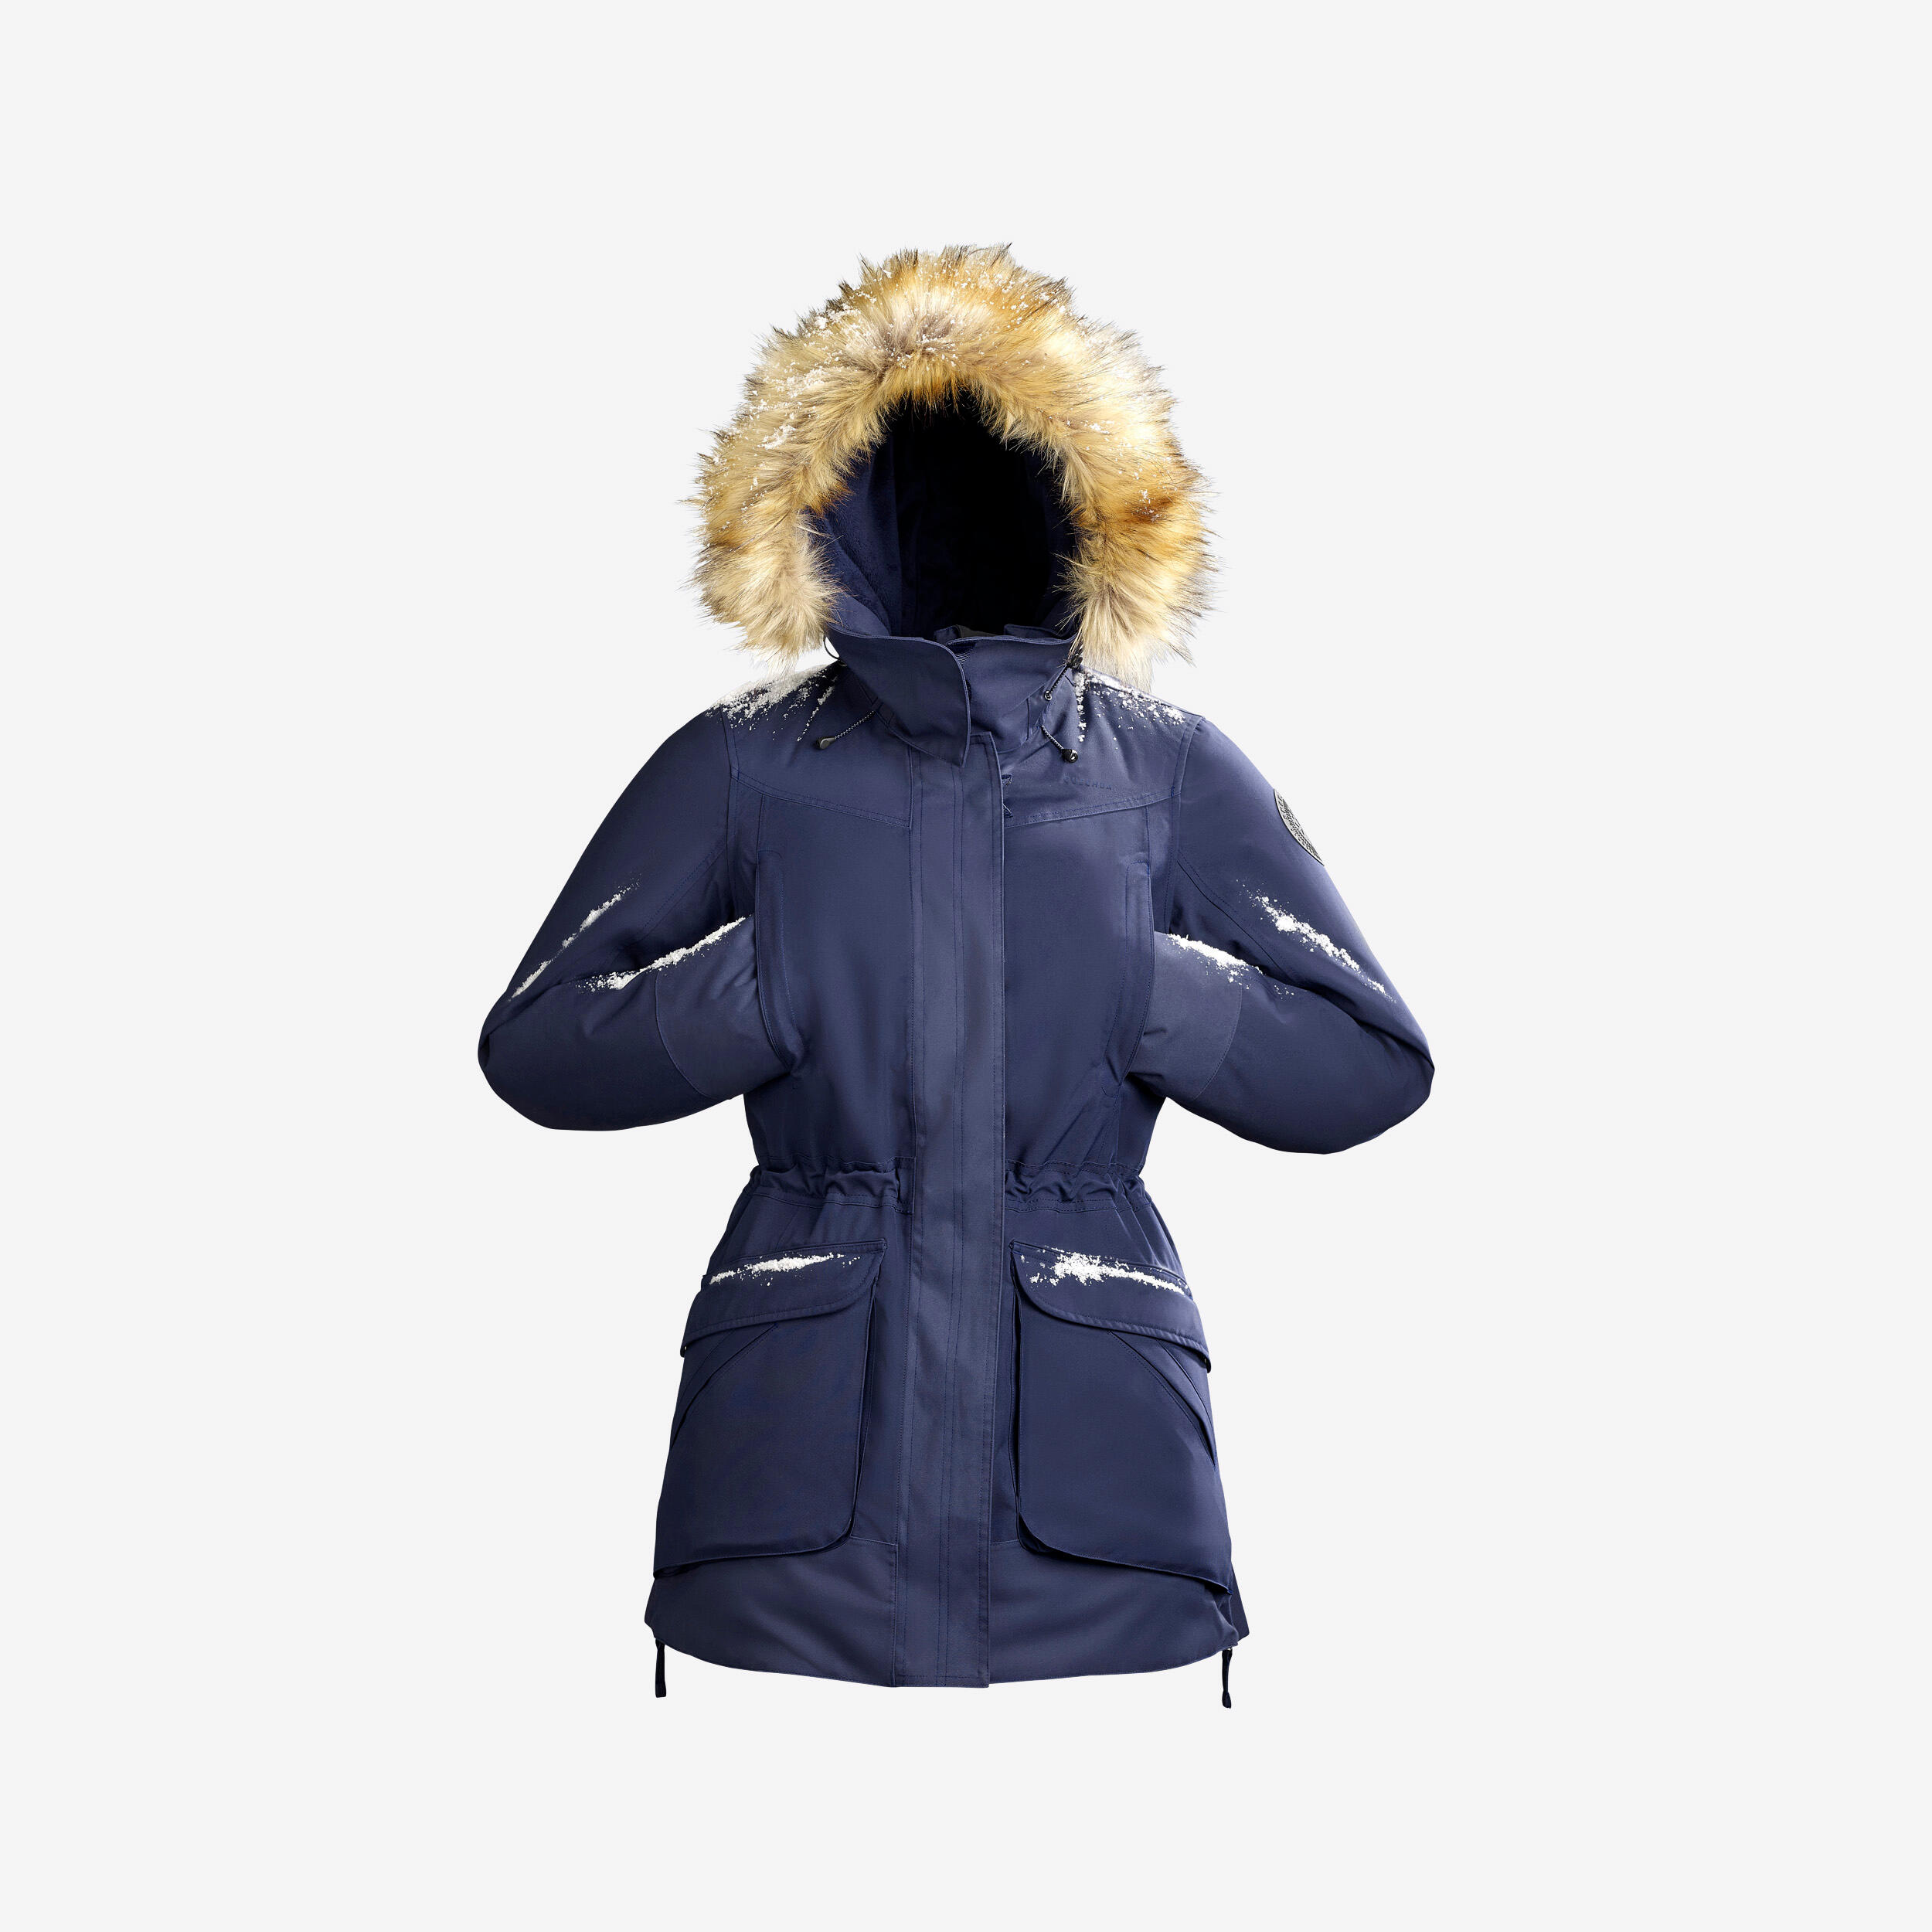 Women’s winter waterproof hiking parka - SH900 -20°C 1/14